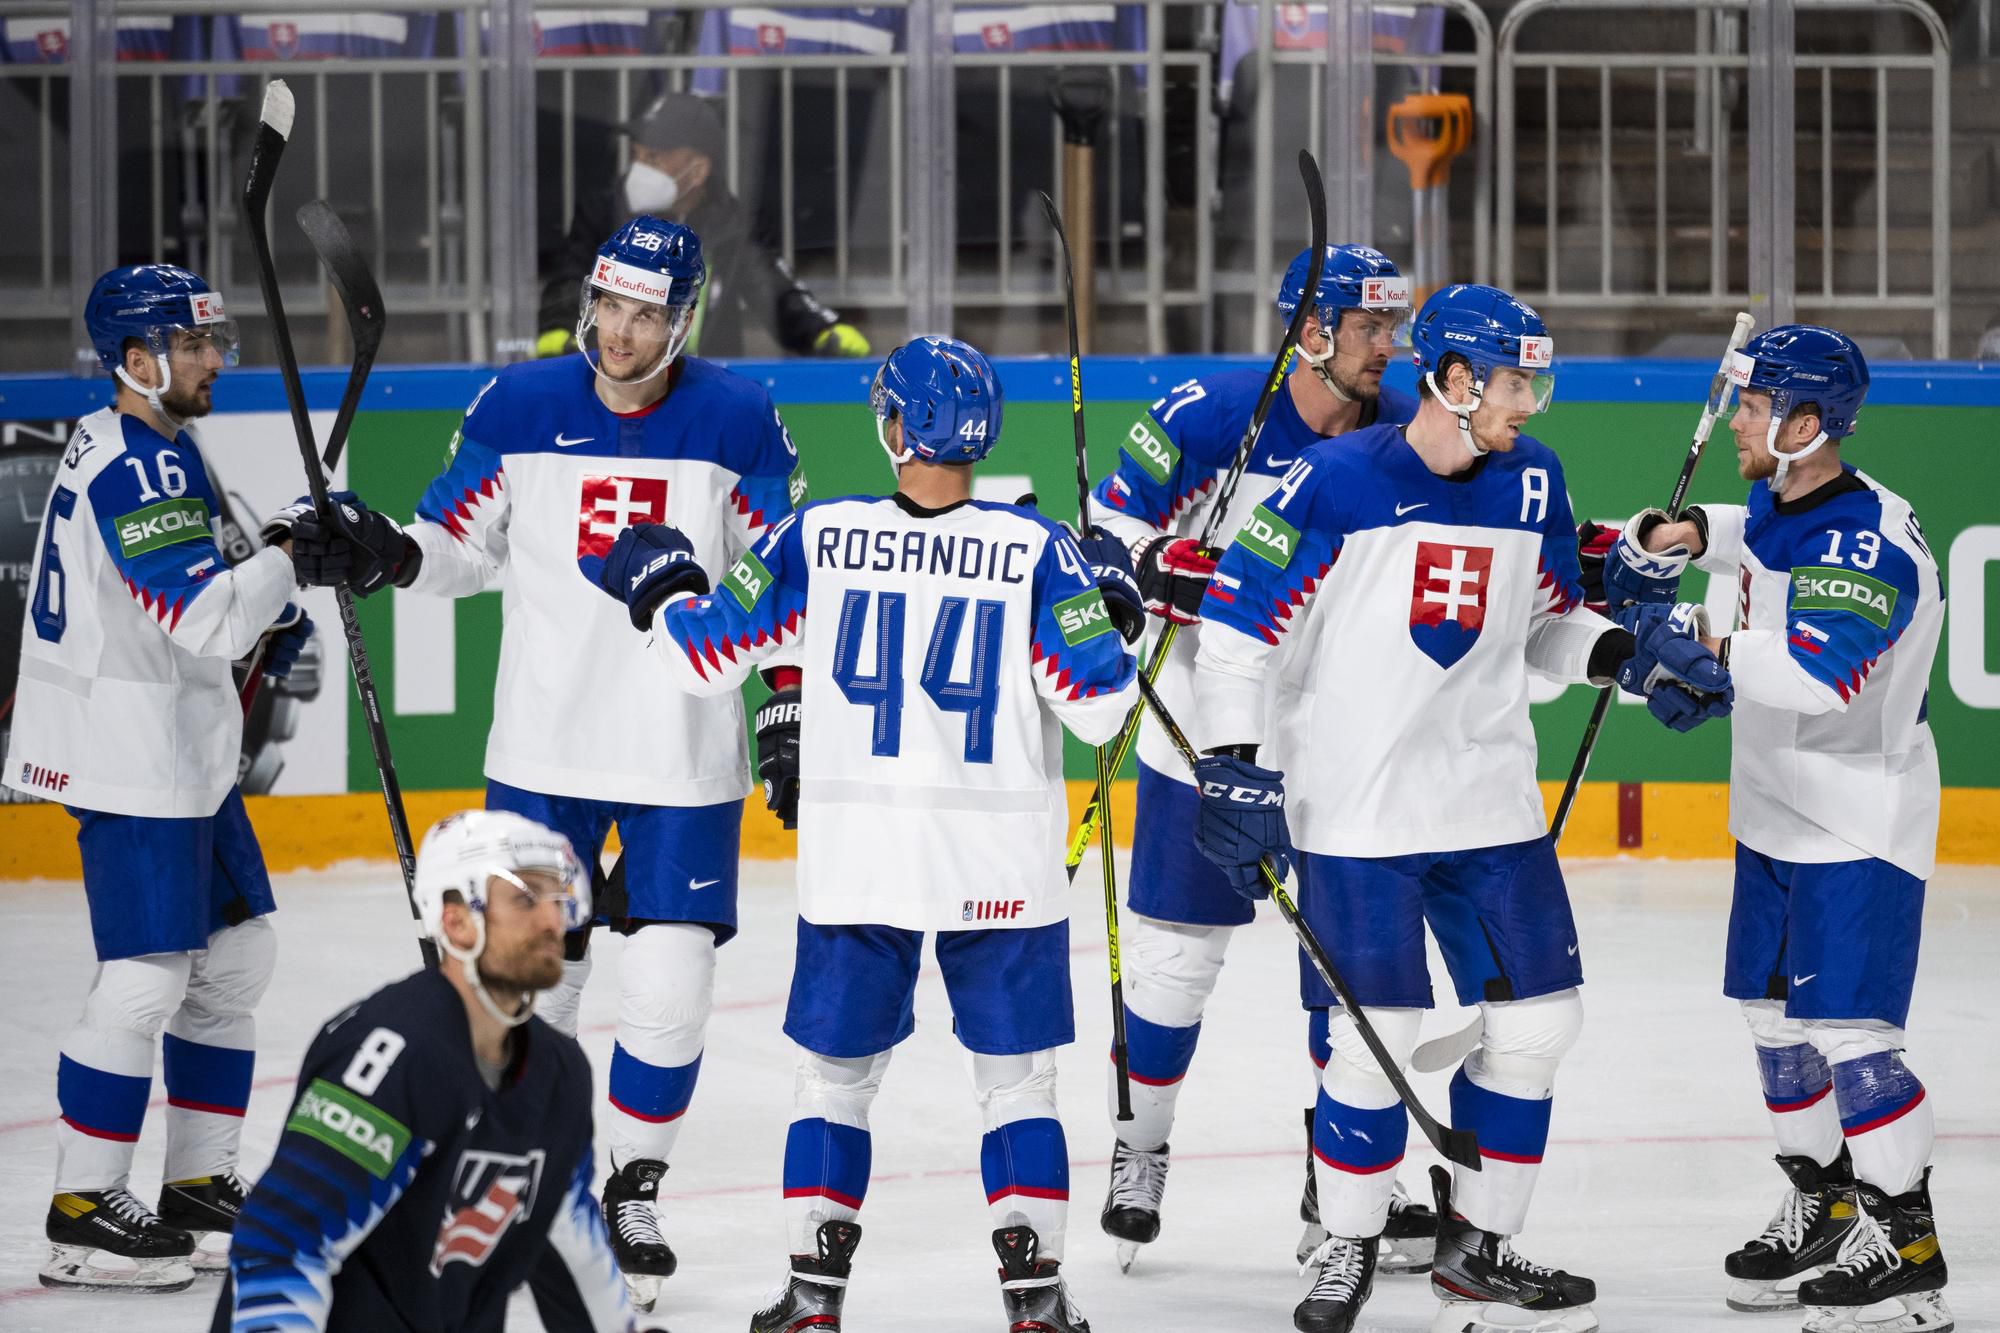 MS v hokeji 2021: USA - Slovensko: slovenskí hokejisti sa tešia z gólu Petra Cehlárika (druhý vpravo)